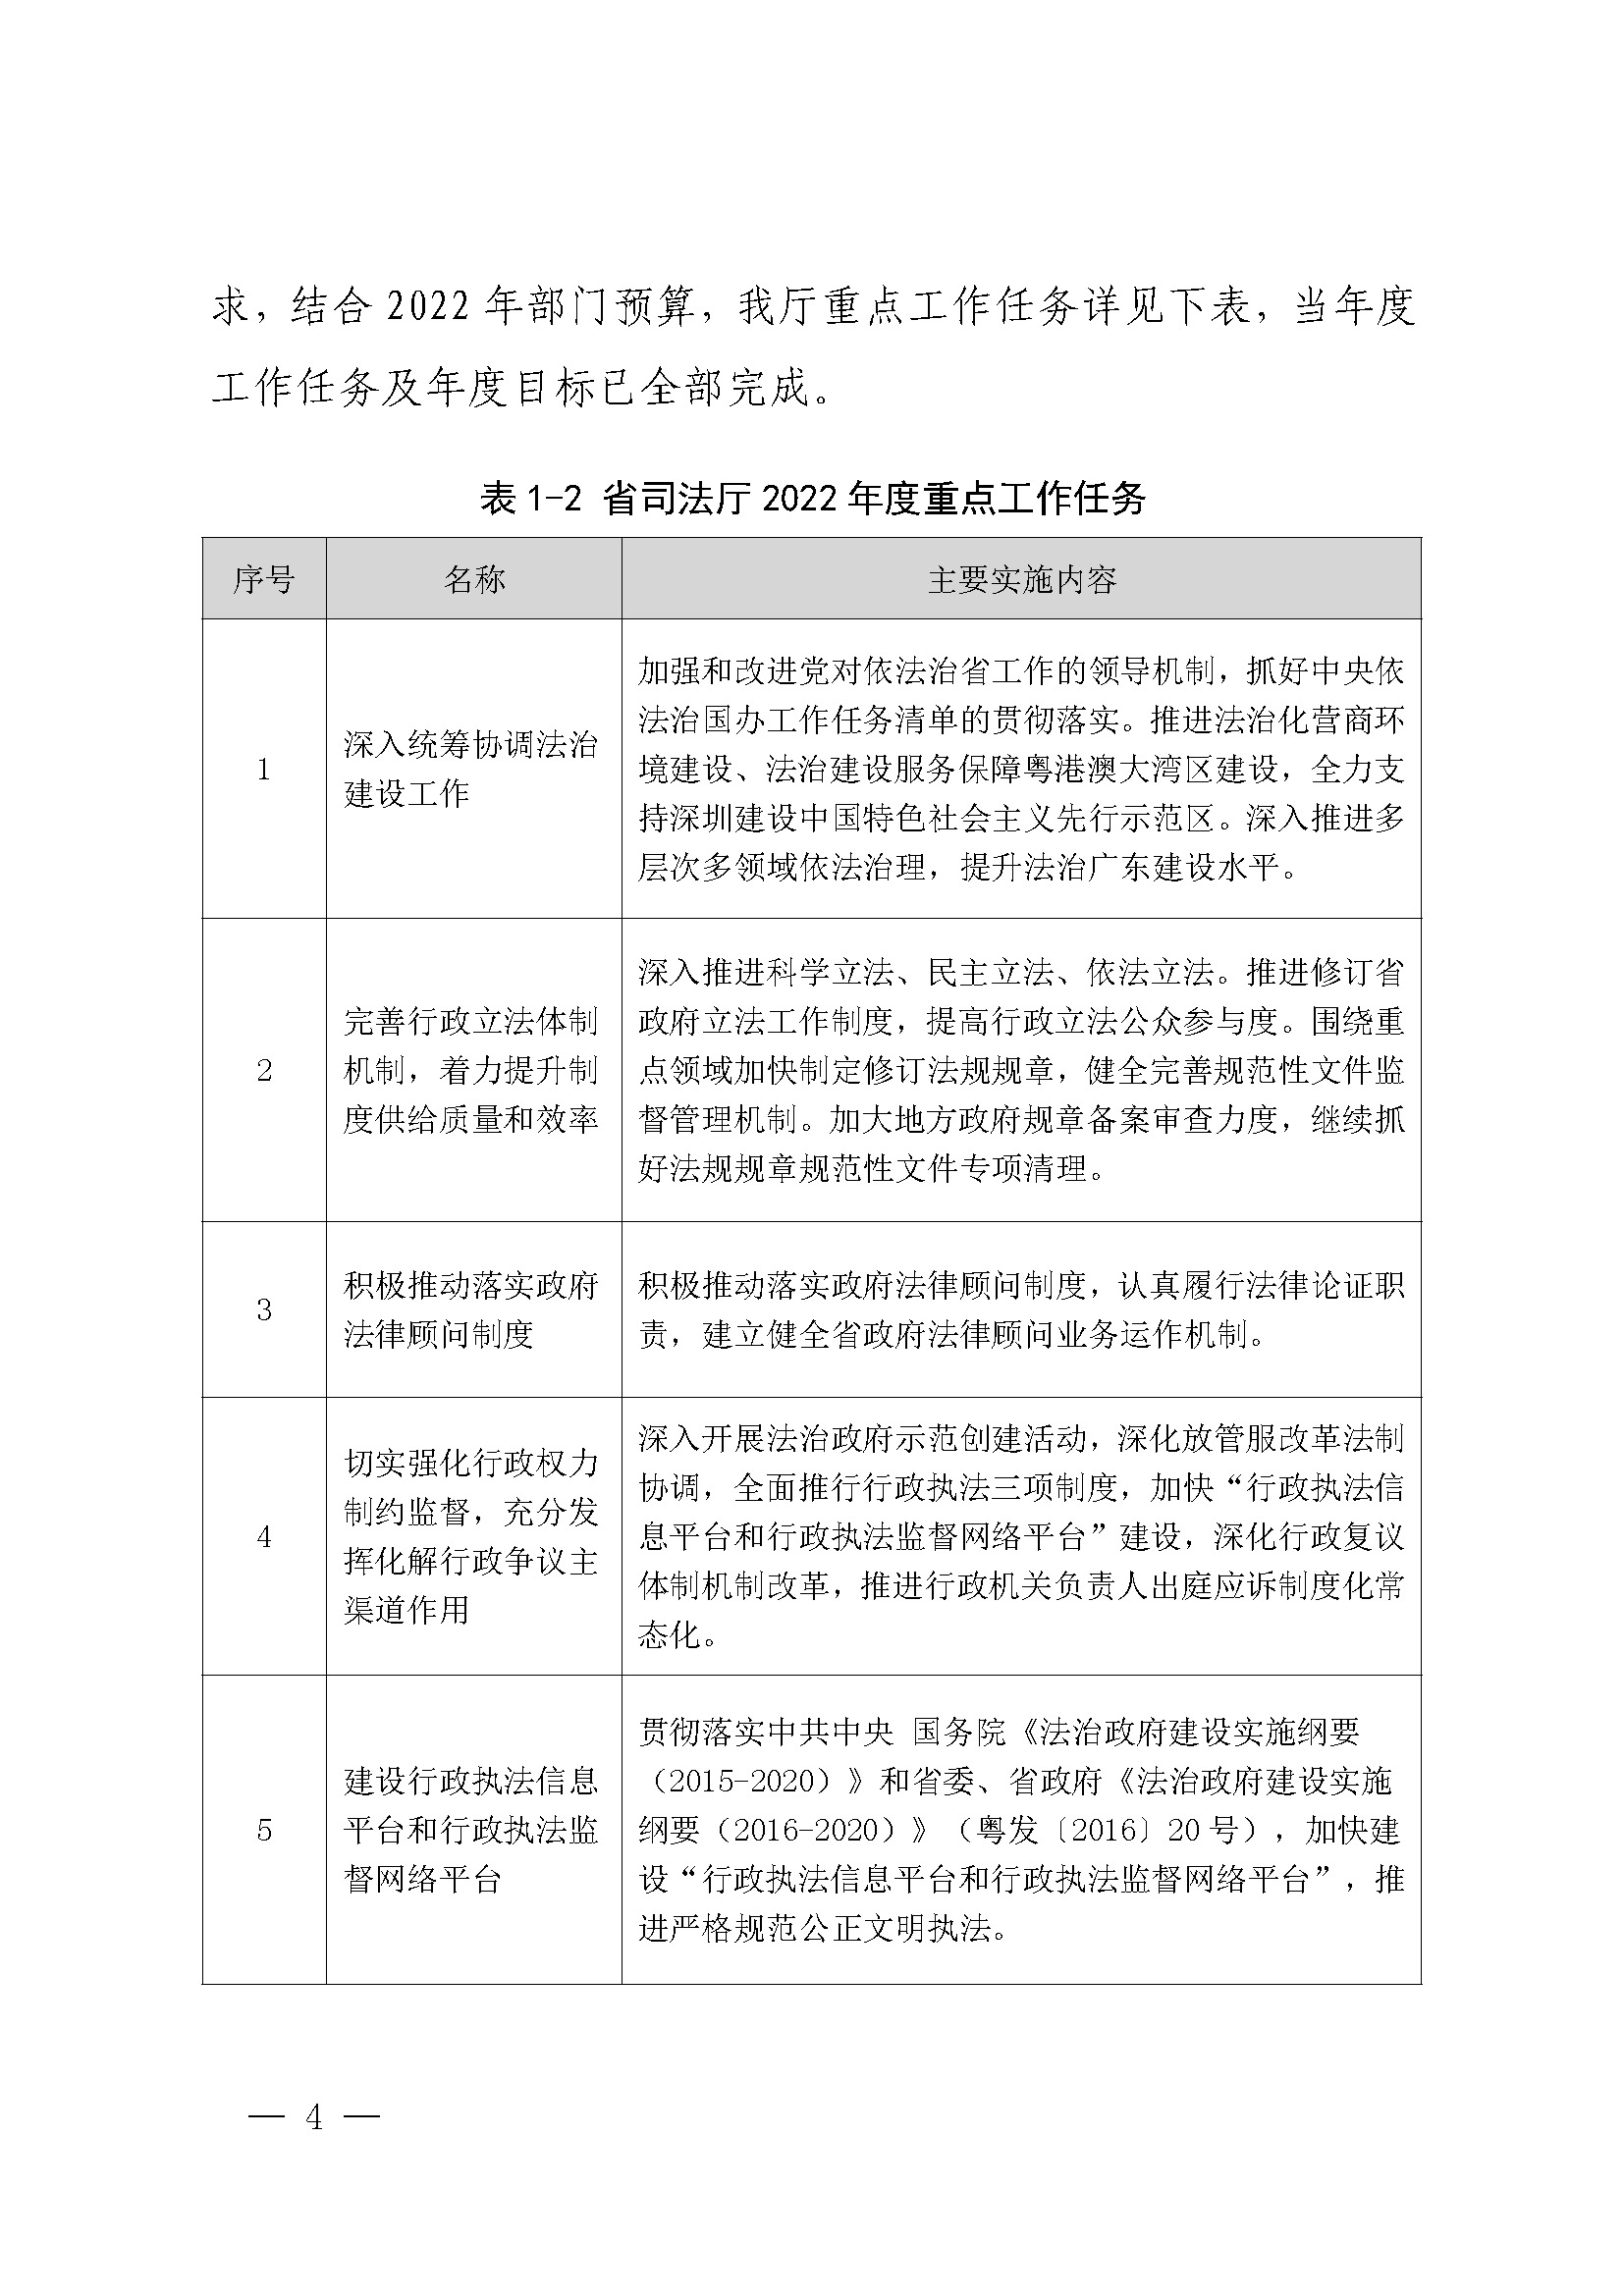 广东省司法厅2022年度部门整体支出绩效自评报告_页面_04.jpg